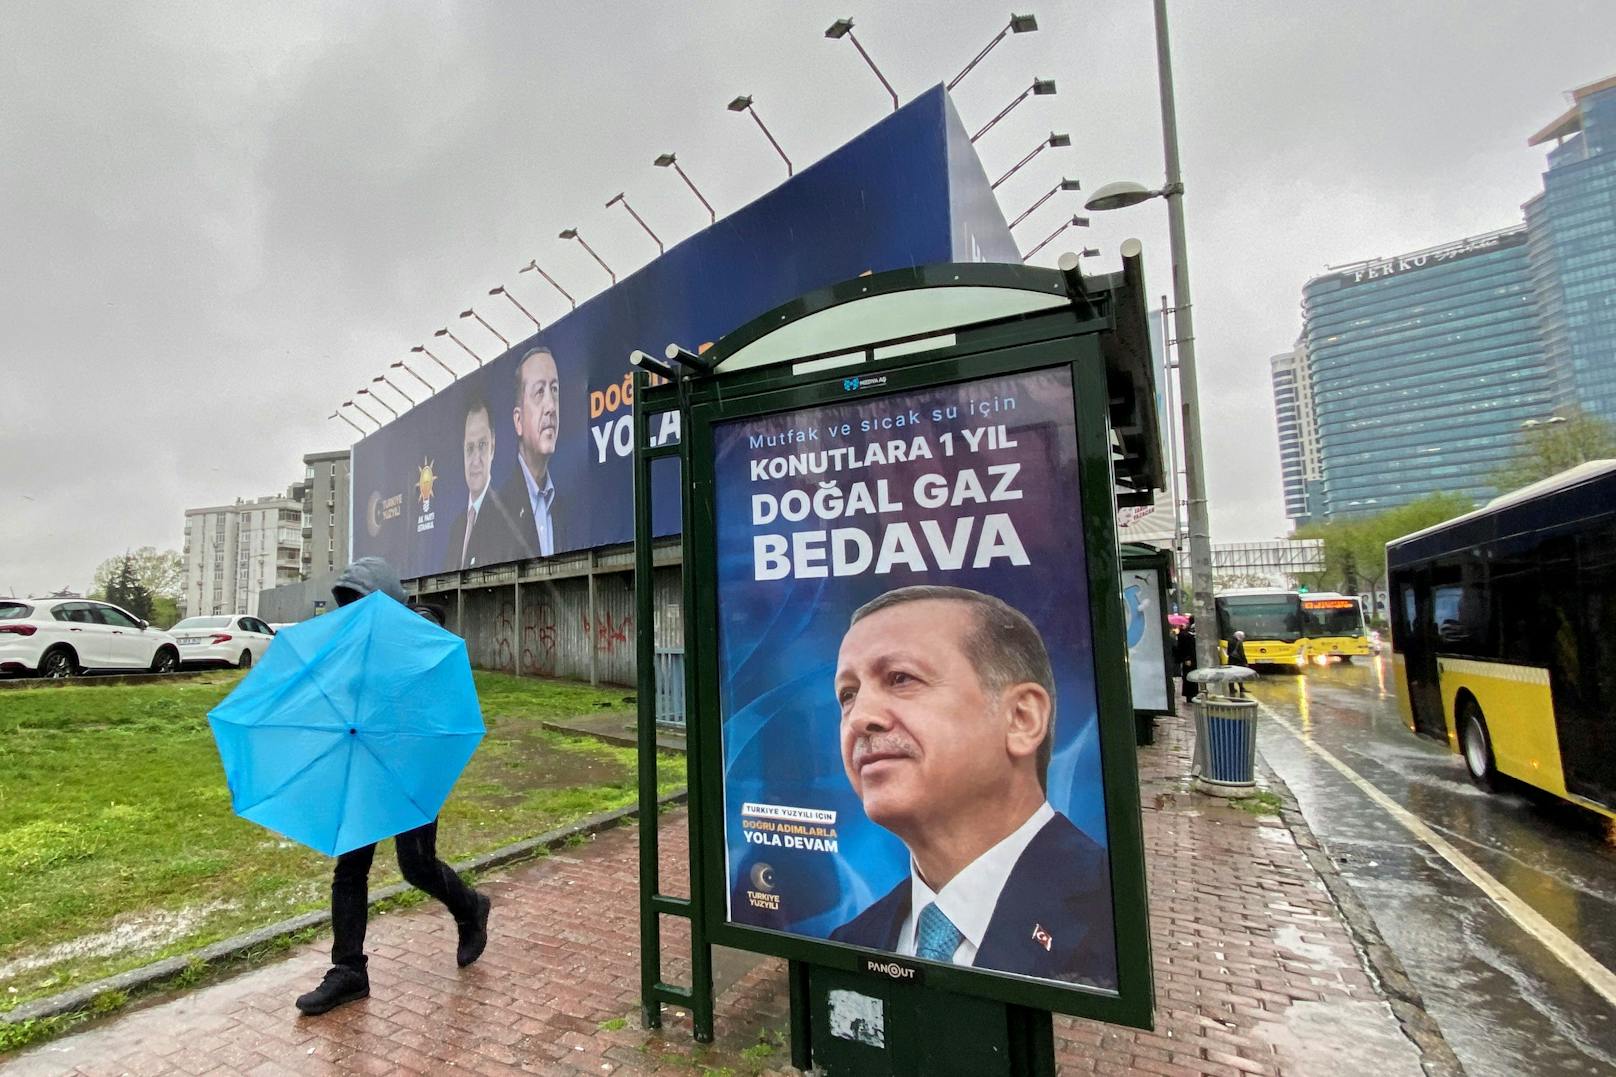 Am 14. Mai wählt die Türkei einen neuen Präsidenten. Der Wahlkampf findet wie auch hierzulande auch über Plakatkampagnen statt.